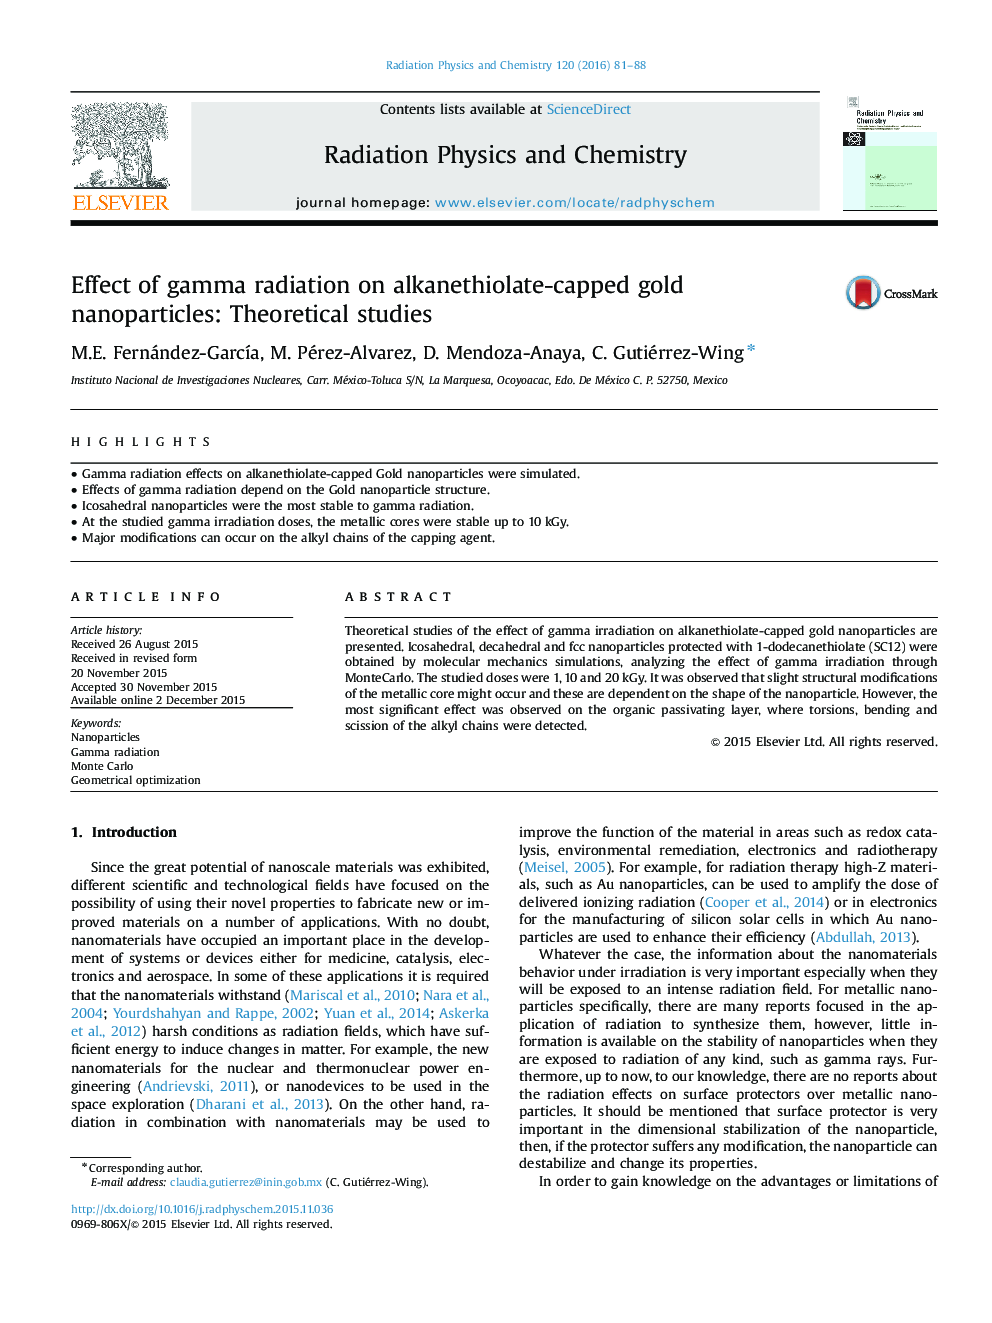 اثر تابش گاما بر روی نانوذرات طلا با پوشش آلکینتیمیولت: مطالعات نظری 